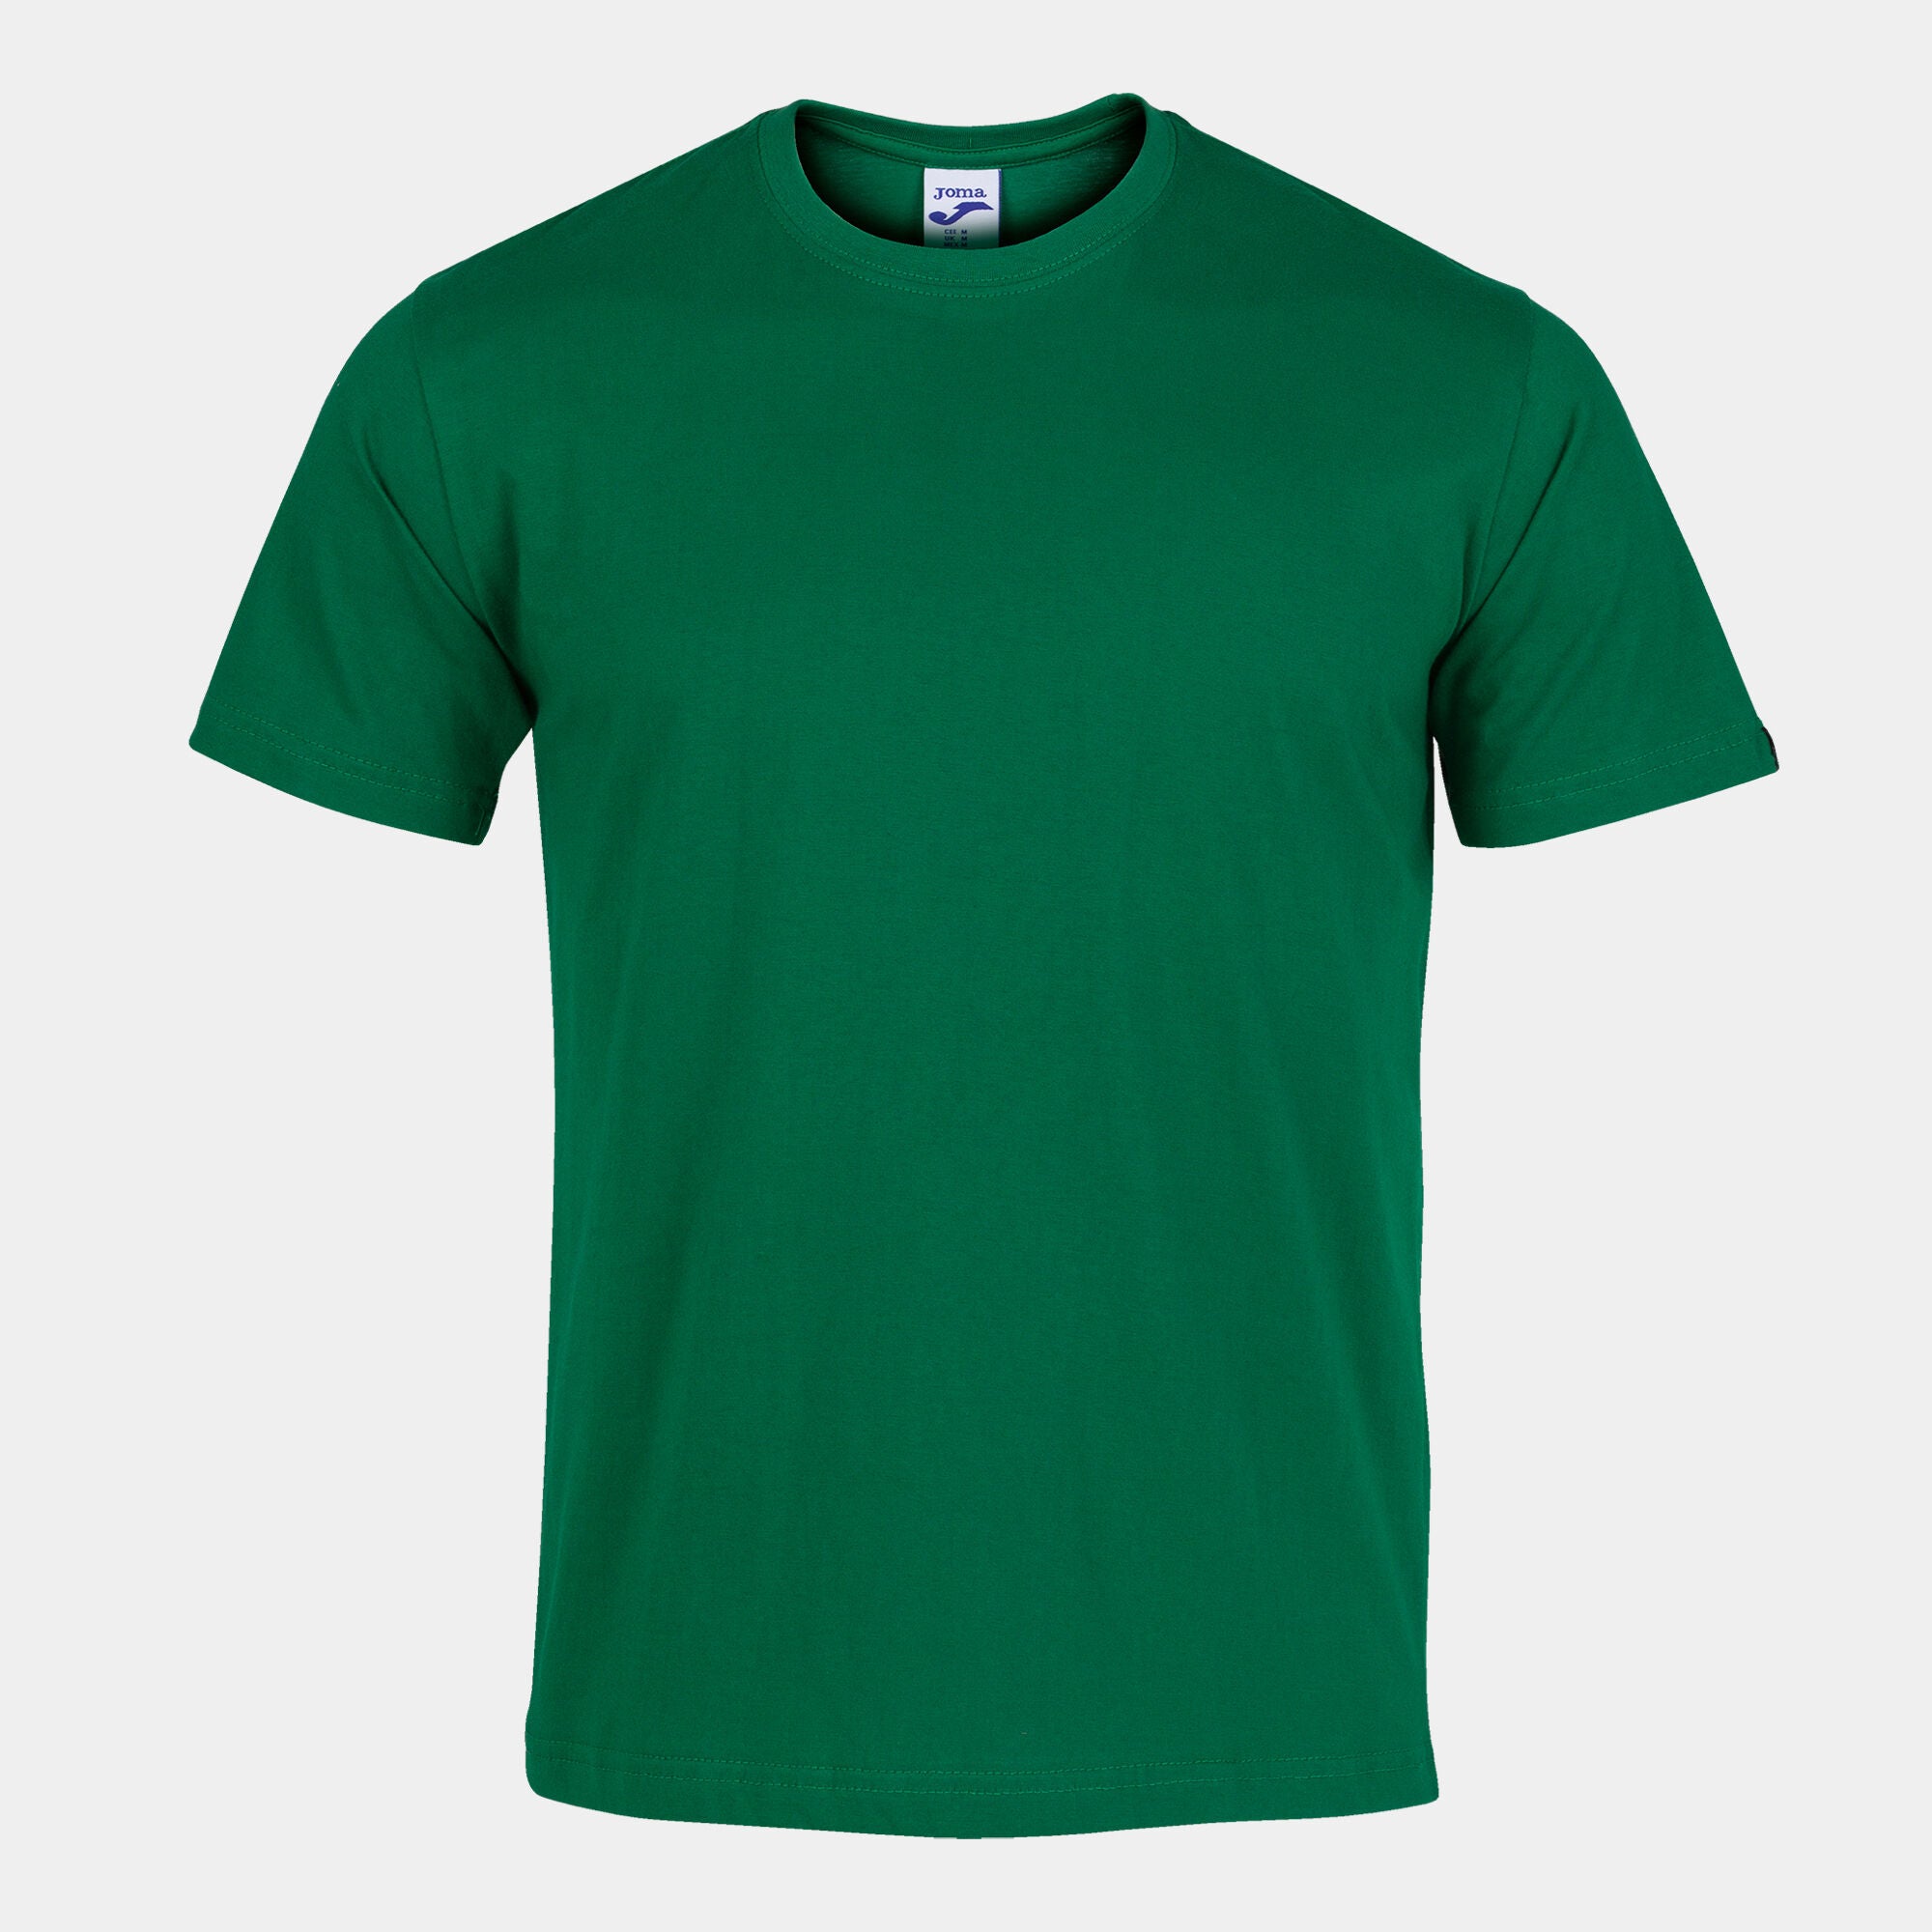 Joma Desert Plain Round Neck T-shirt Men's-2359-Green